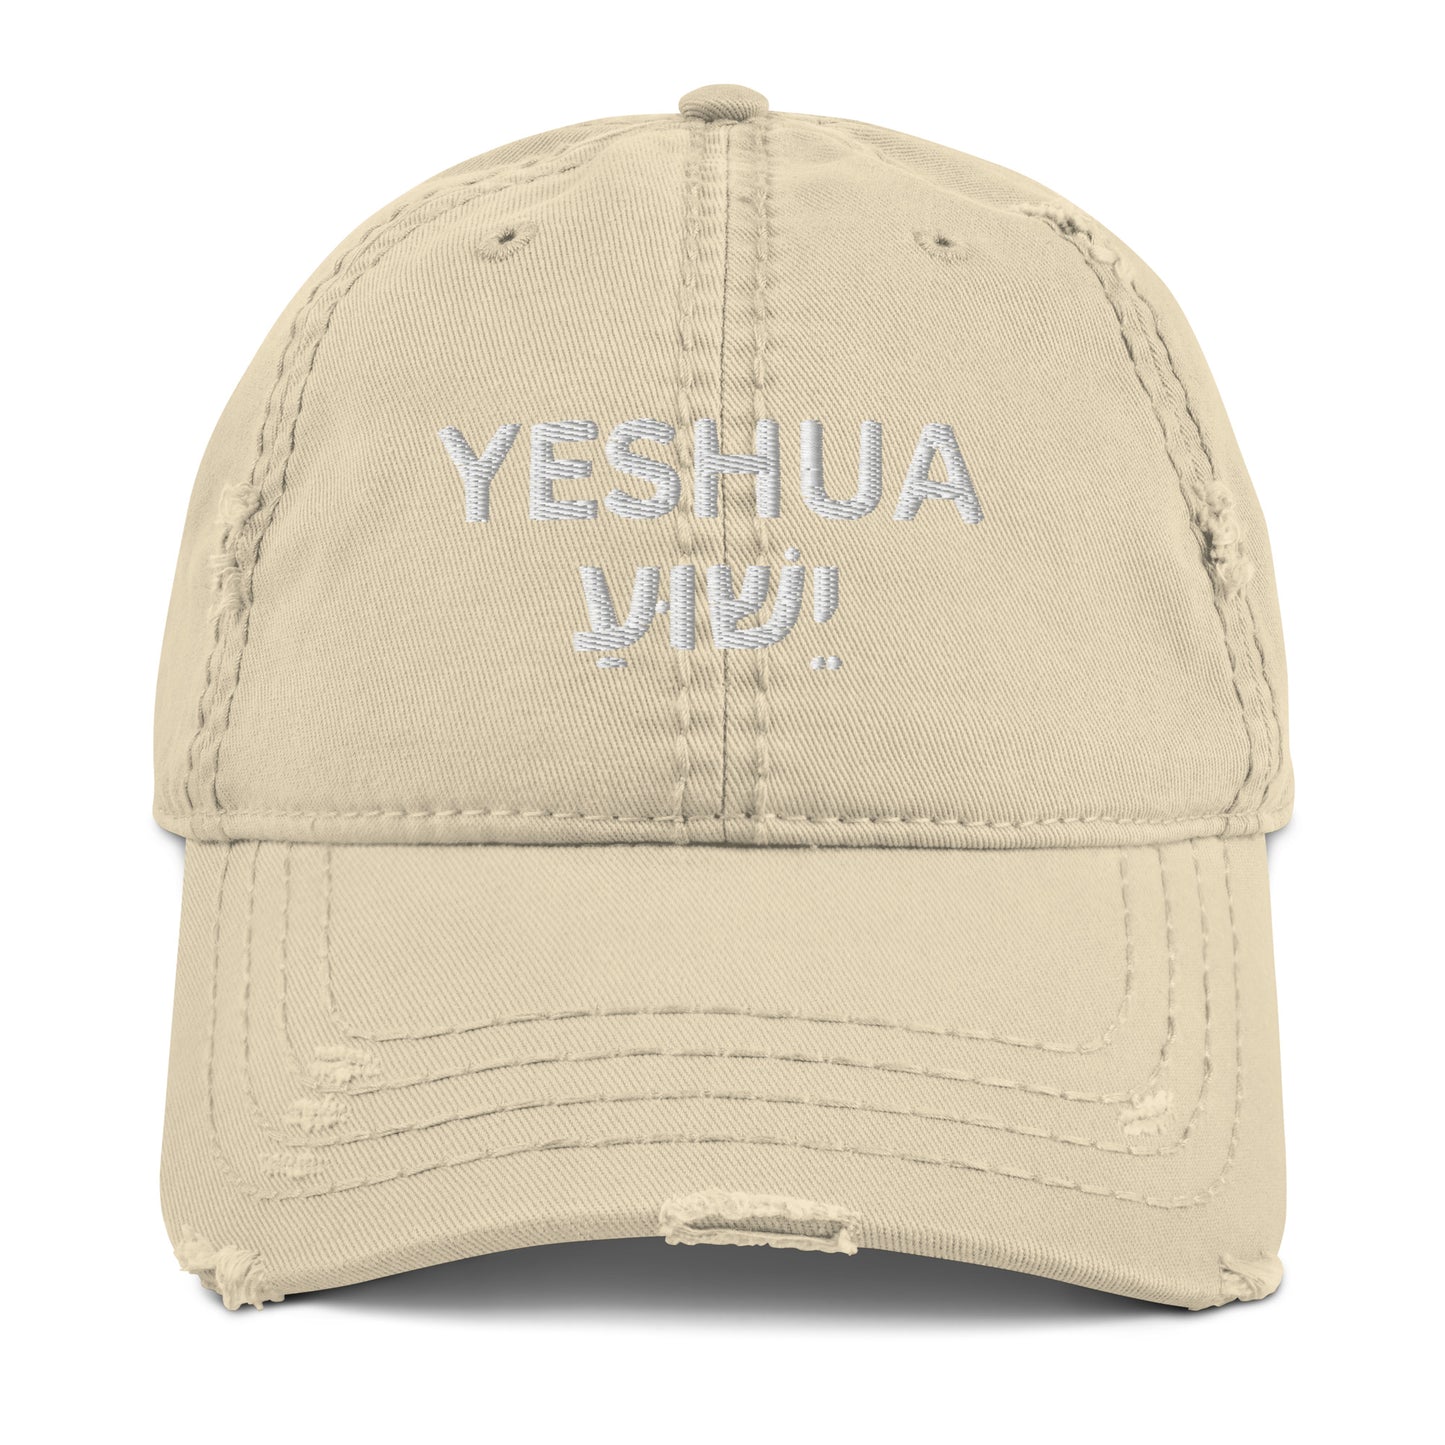 Distressed "Yeshua" Dad Hat (Unisex) - Humble & Faithful Co.